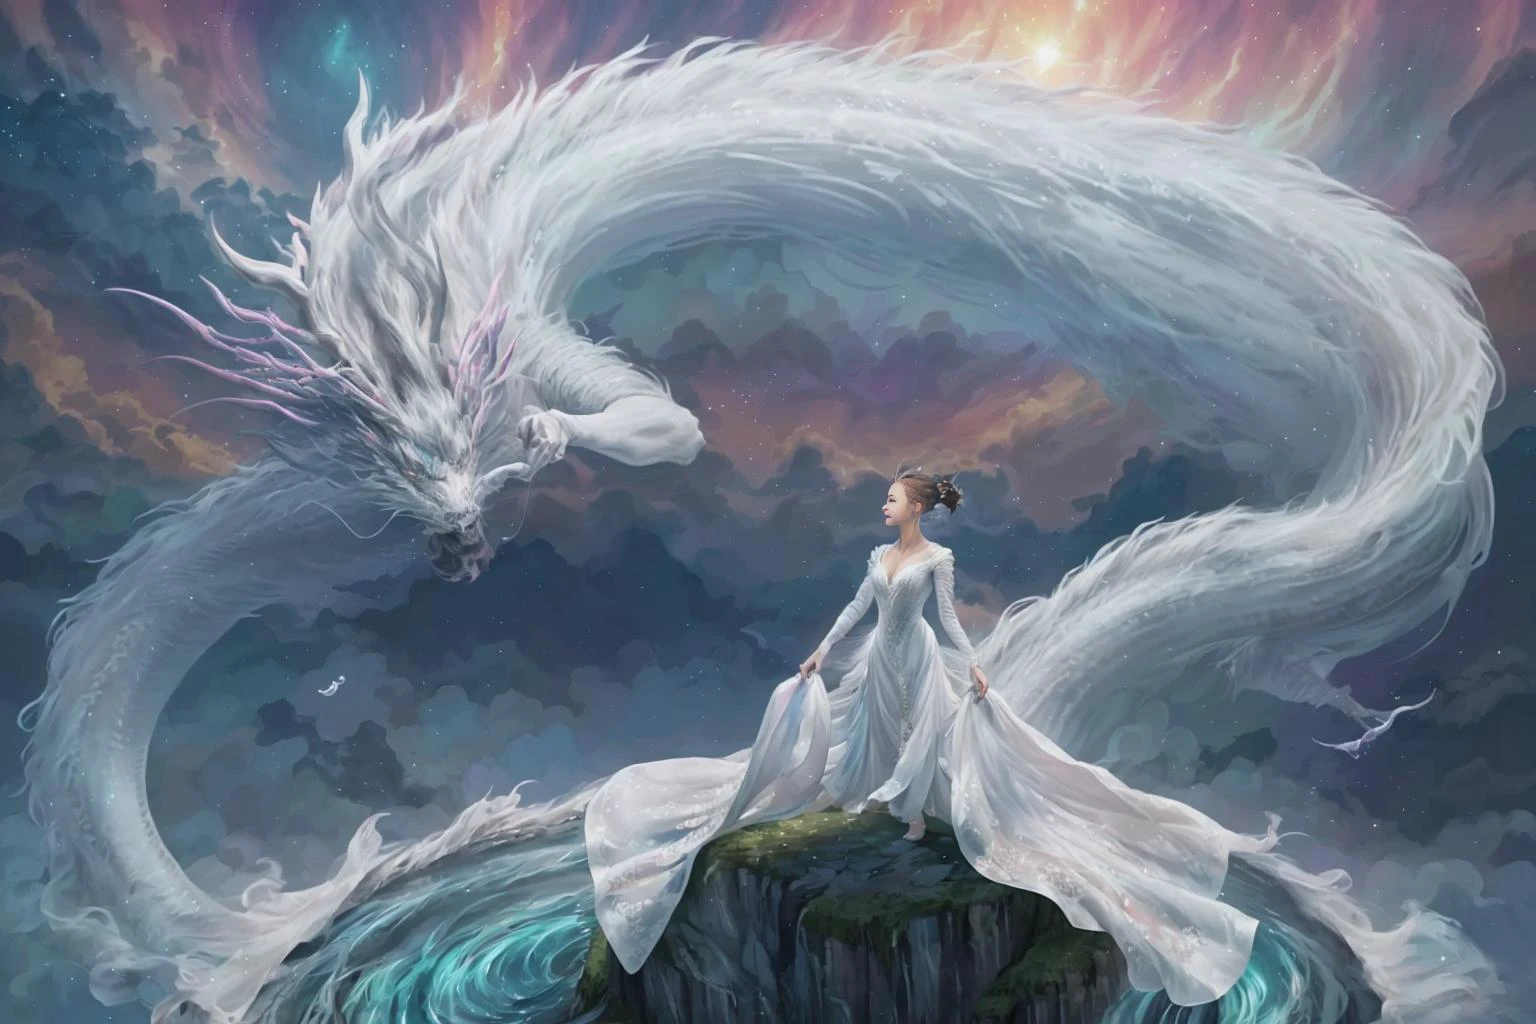 В завораживающем образе, элегантная женщина, одетая в белое китайское платье, скользит по небу на вершине мифического китайского дракона. Когда они пересекают небеса, Ее струящееся платье и переливающаяся чешуя дракона создают завораживающее видение гармонии и потусторонней красоты. 
HDR, (фотореализм, шедевральное качество, Лучшее качество), , чистое лицо_v1,ulzzang-6500-v1.1,